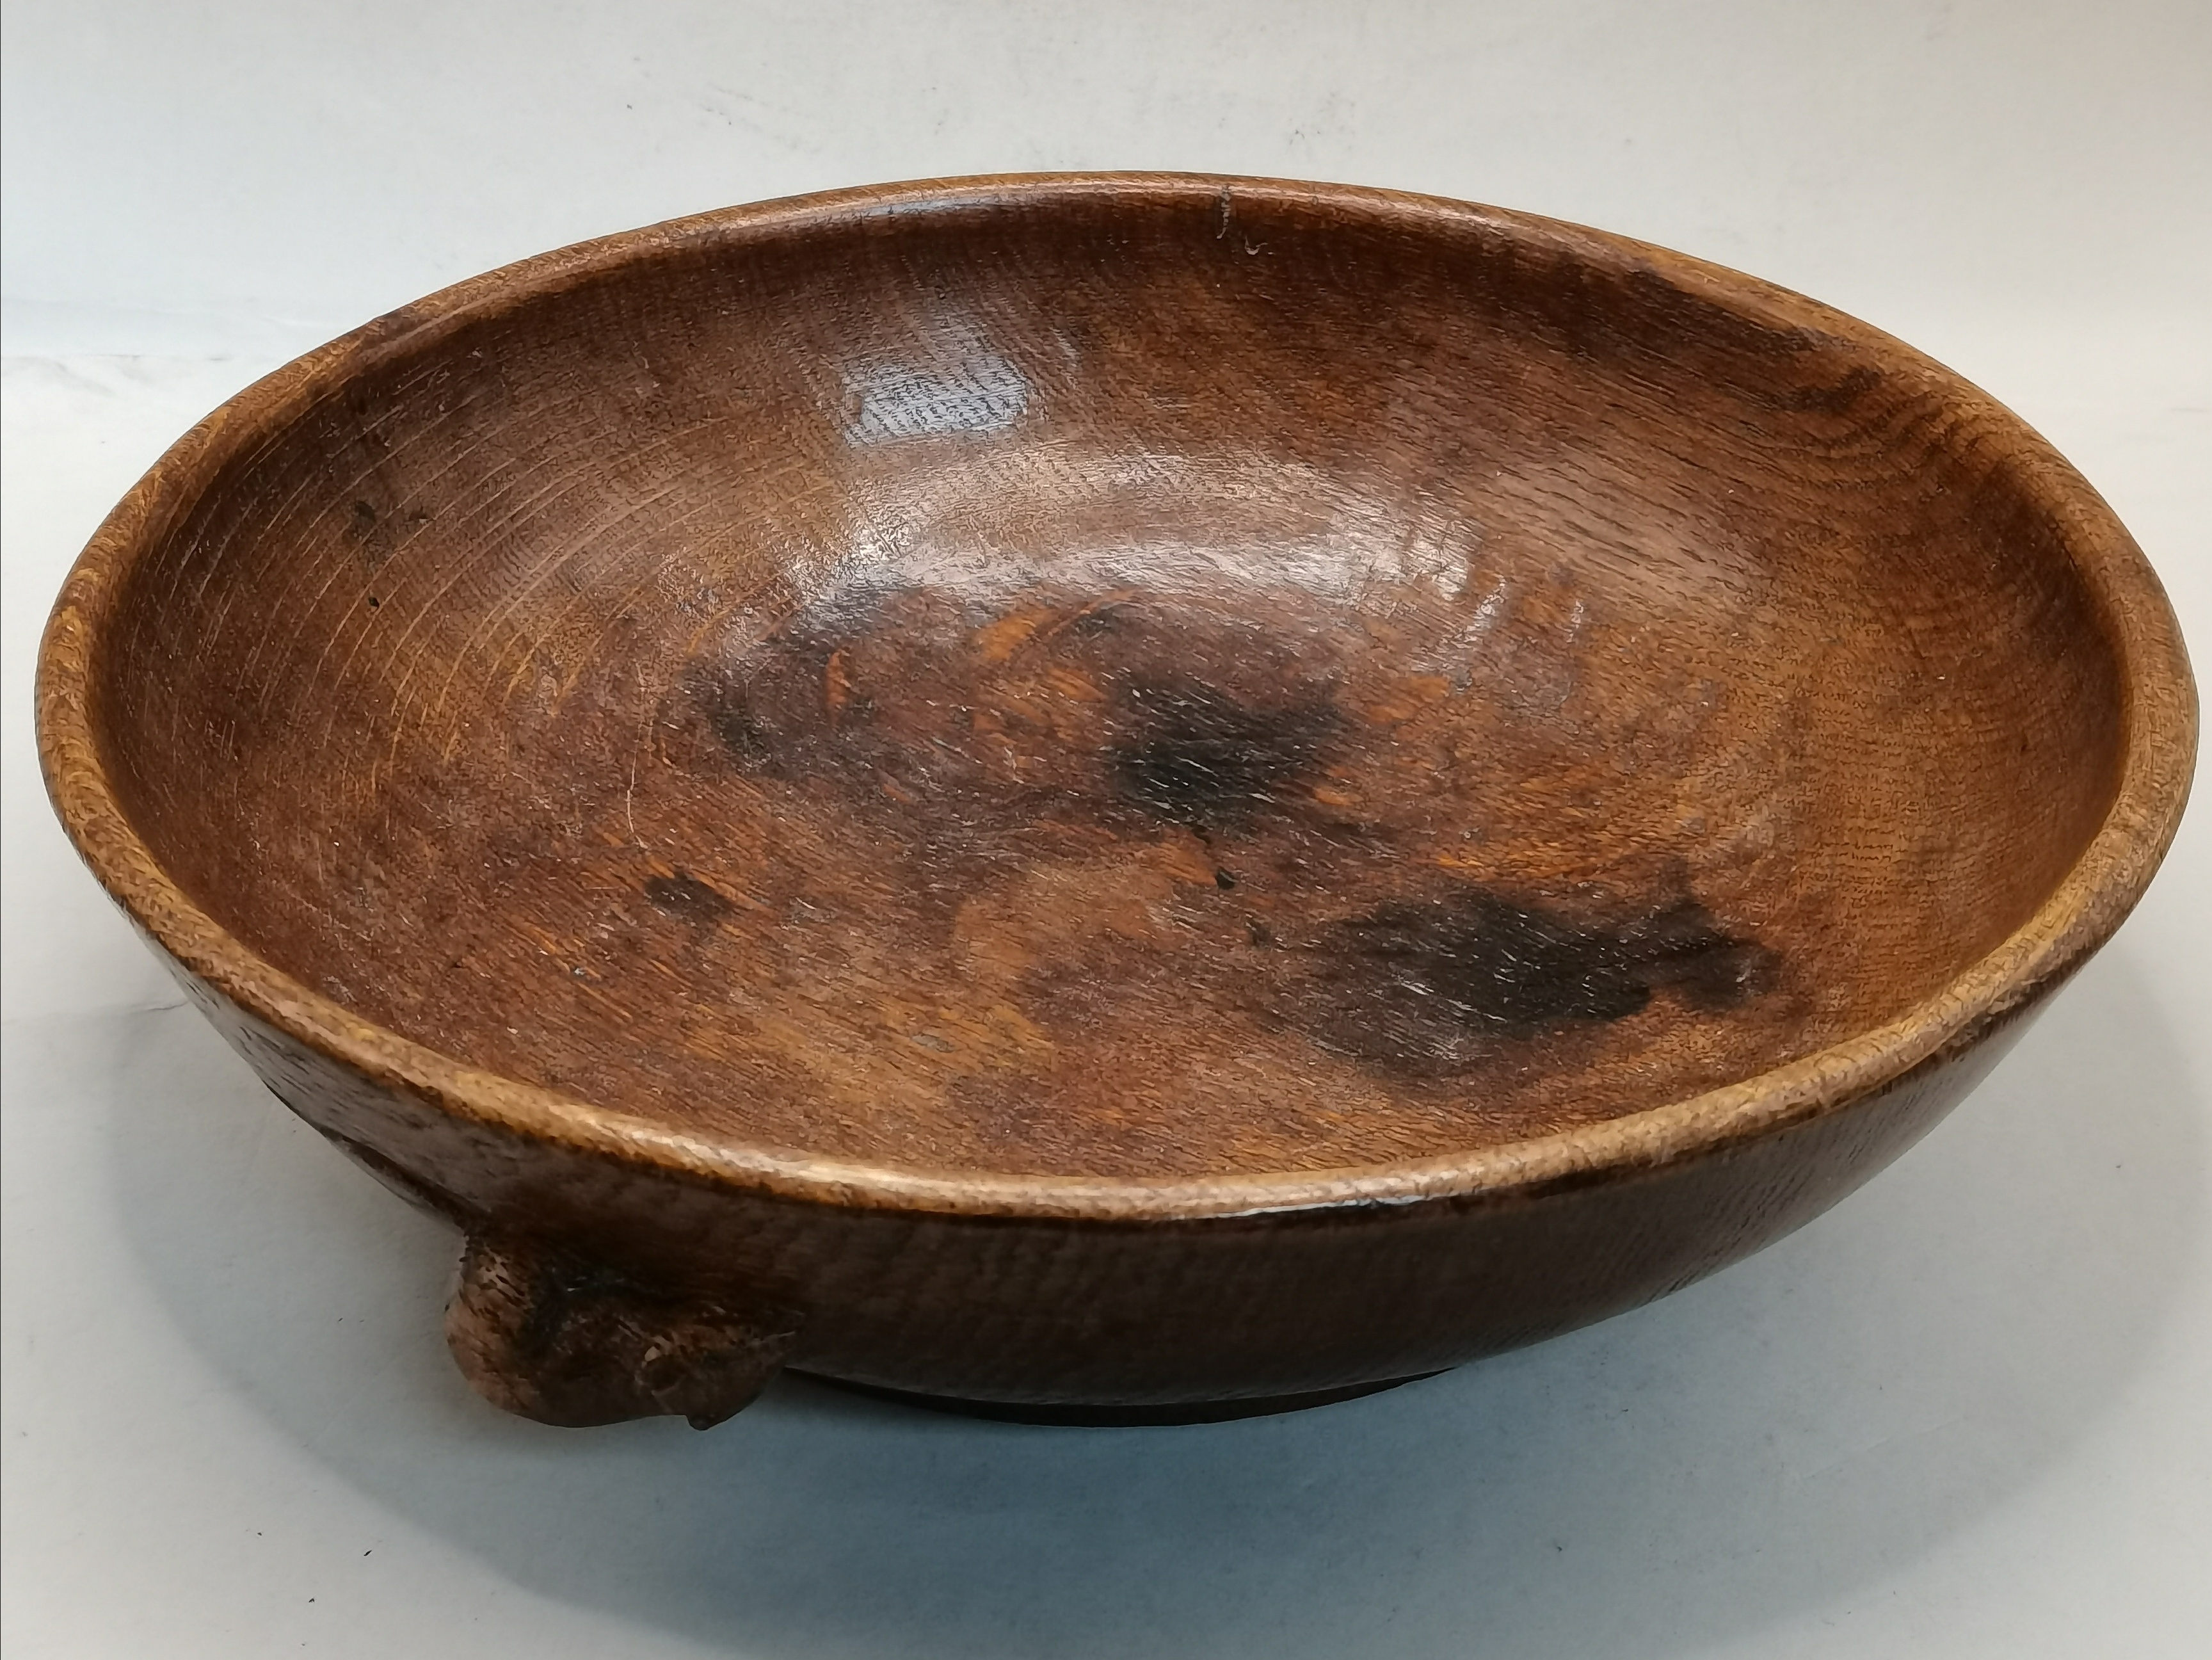 Robert Thompson, a Mouseman oak fruit bowl - Image 2 of 5